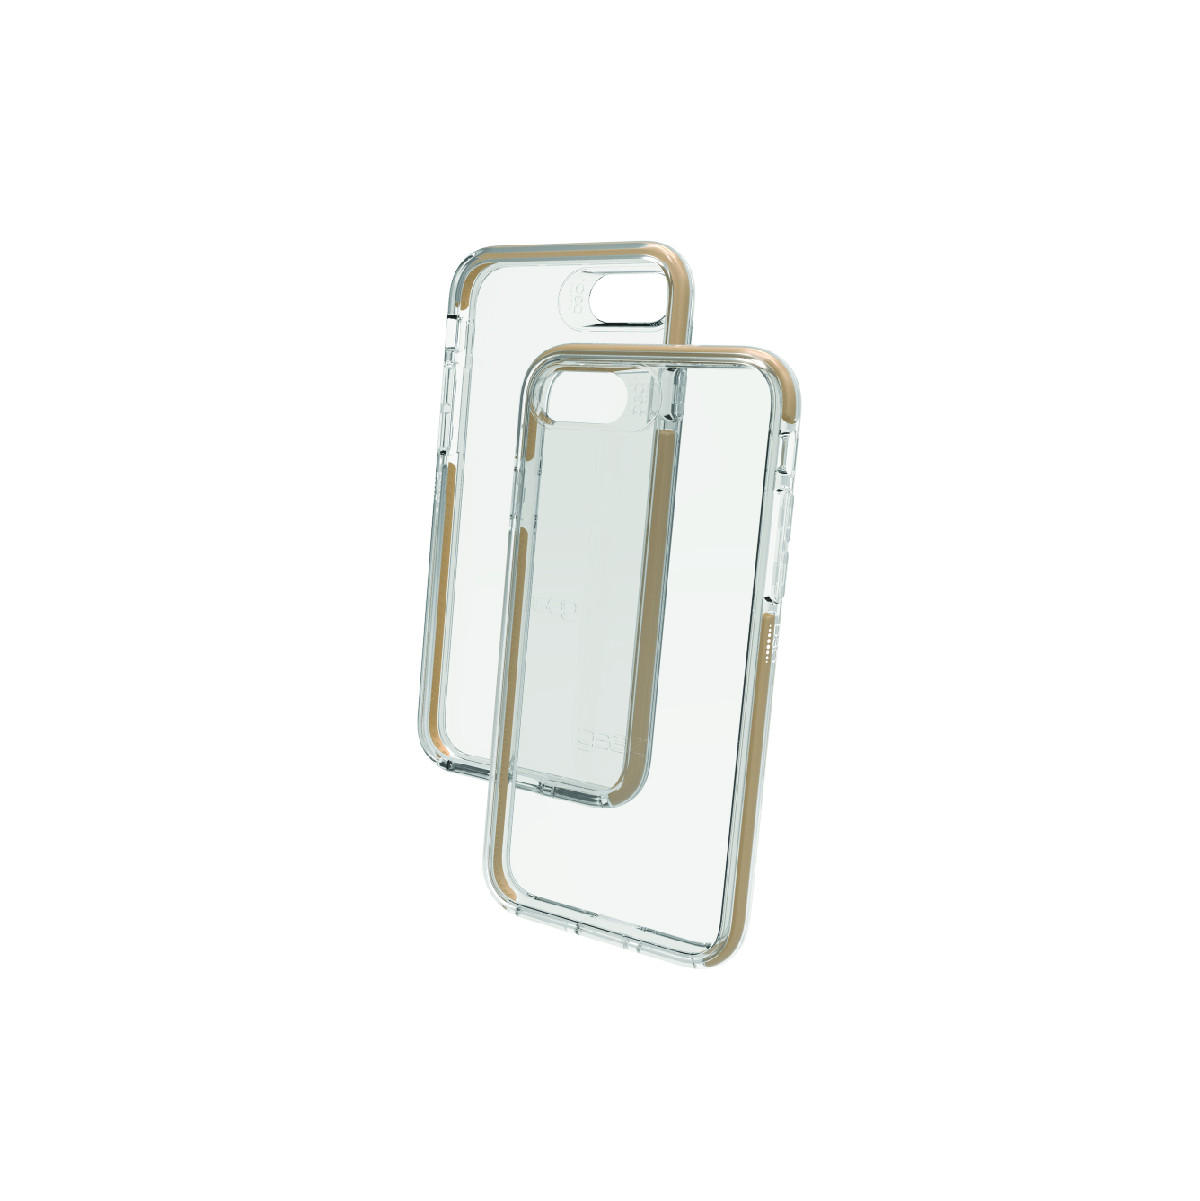 Ốp lưng Gear4 D3O Piccadilly chống sốc 3m cho iPhone 6/6s/7/8 ( IC708 ) - Hàng chính hãng